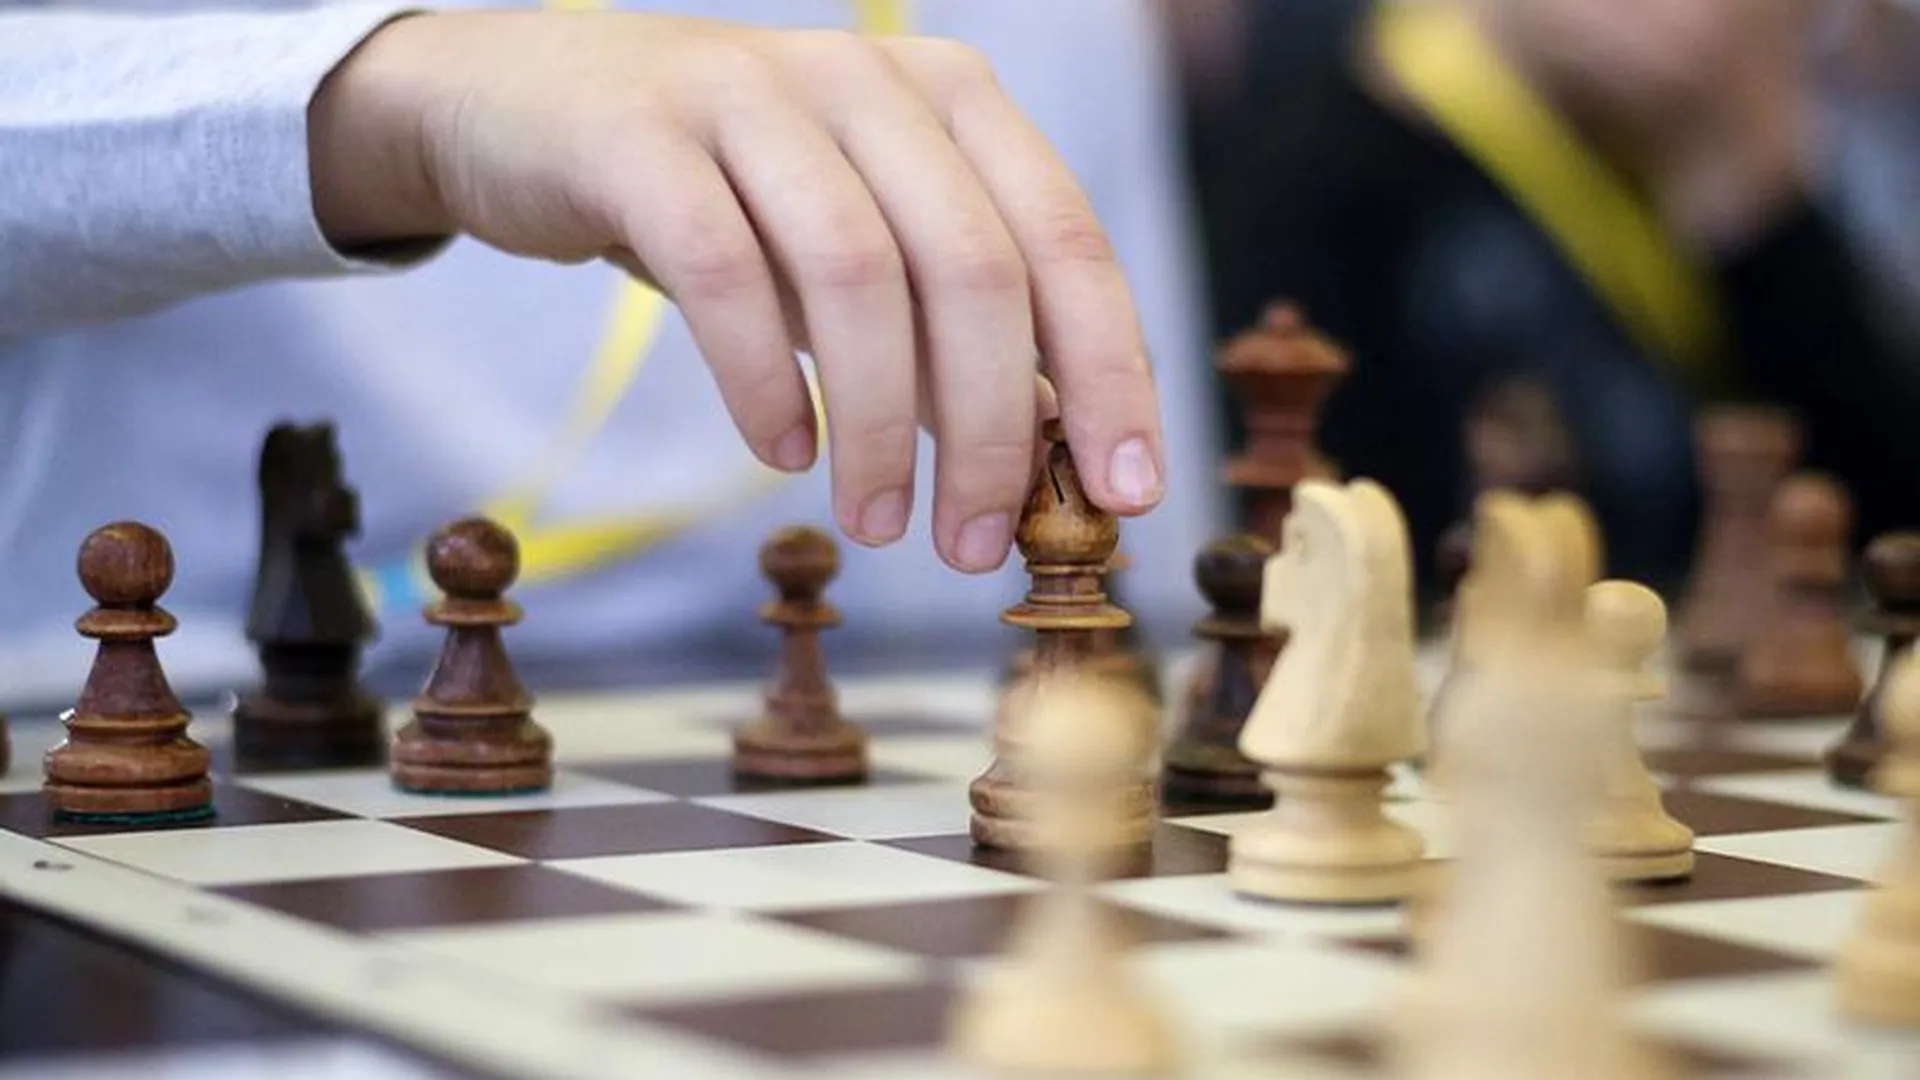 Сеанс одновременной игры в шахматы проведут на джазовом фестивале в Горках Ленинских